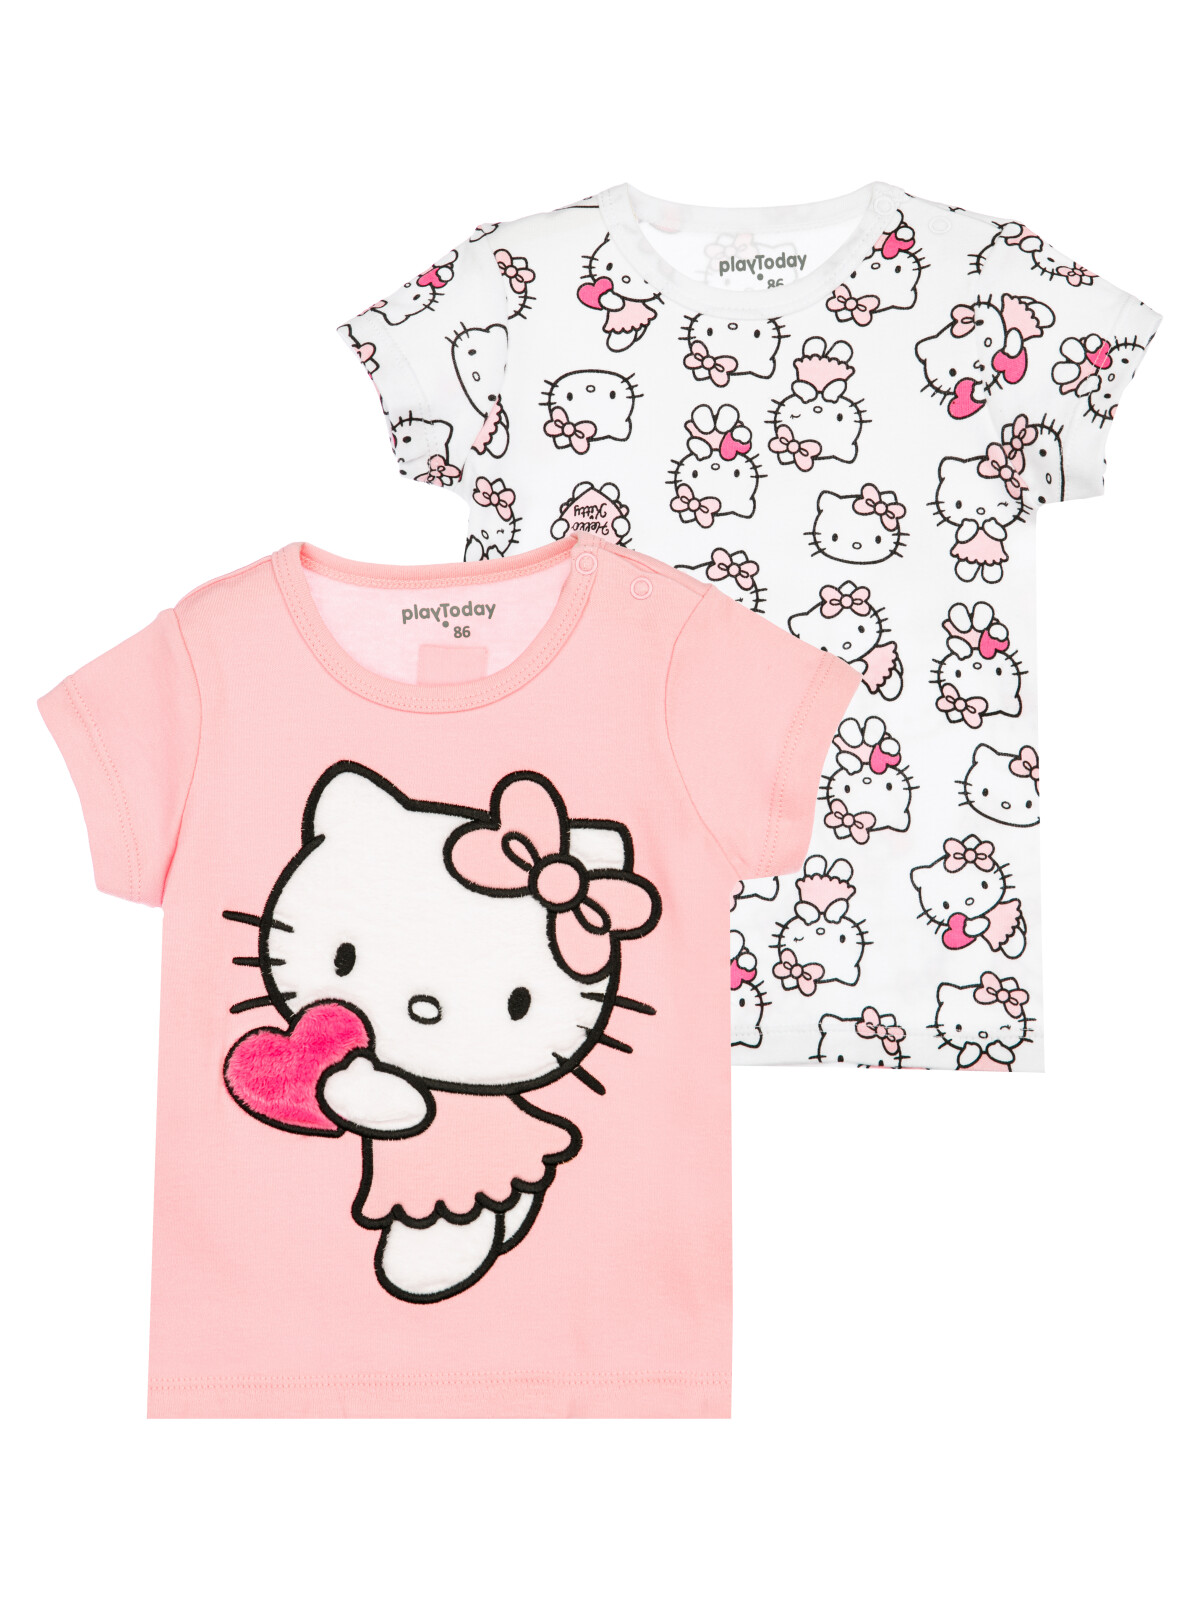 детская для девочек PlayToday (футболка), 2 шт в комплекте, белый,светло-розовый, 74